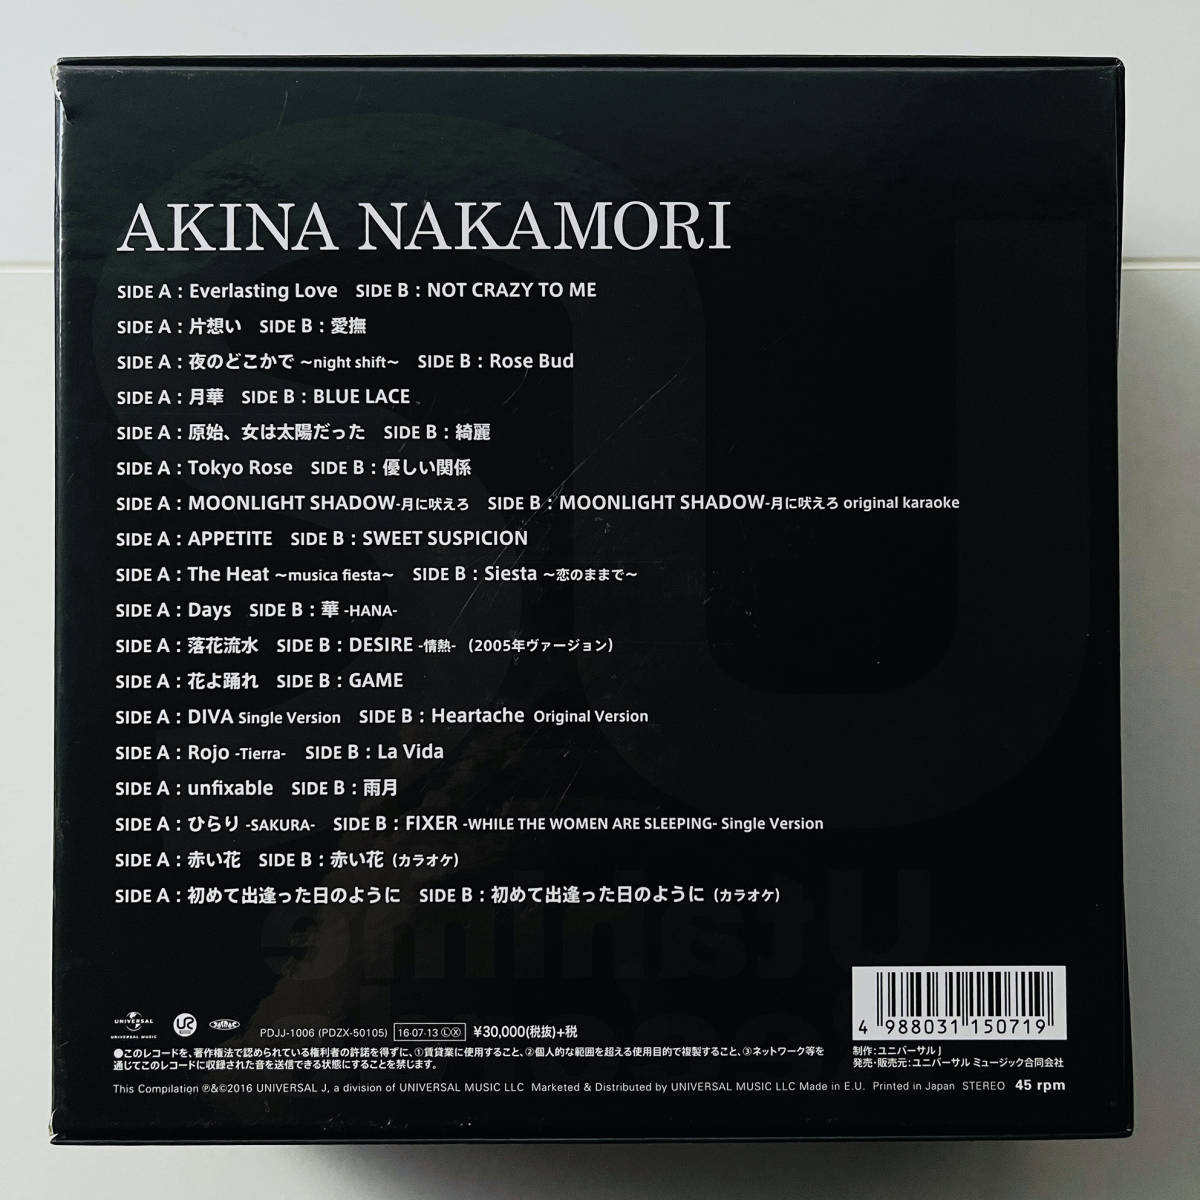 999セット限定 シリアル・ナンバー入りアナログセット レコード18枚組 ボックス〔 中森明菜 Akina Nakamori Analog Set 〕_画像10